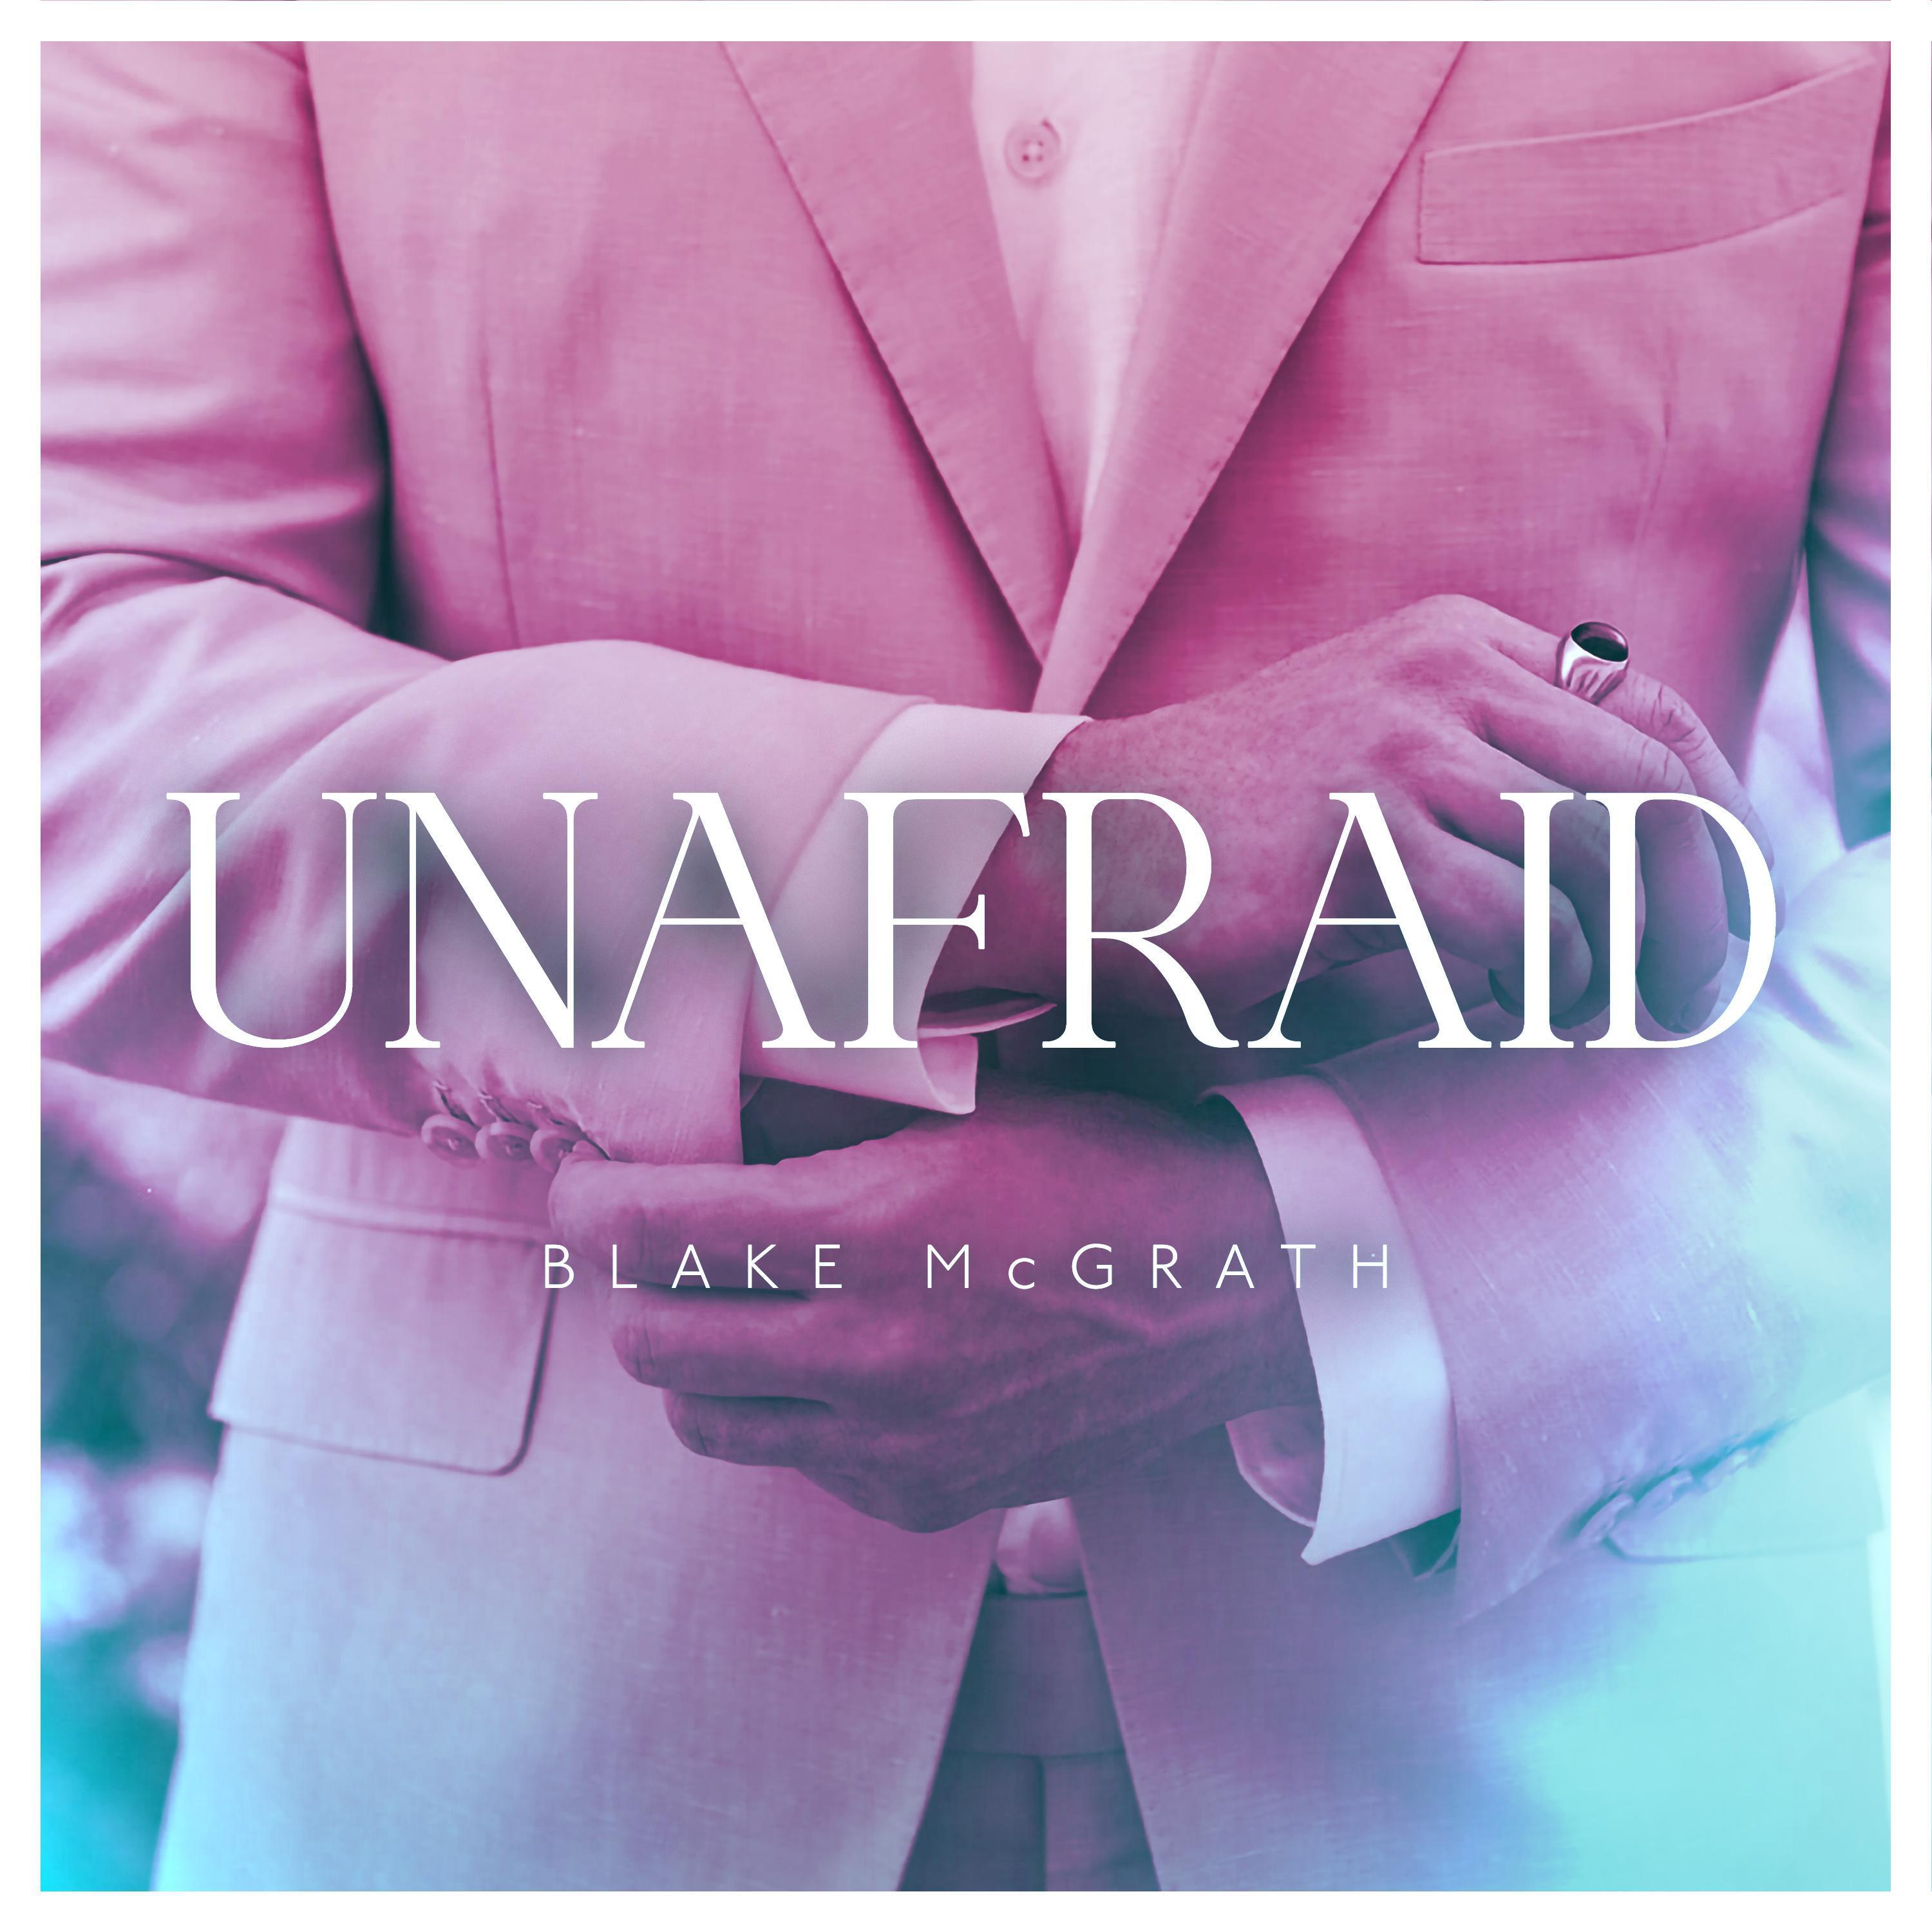 Blake McGrath - Unafraid